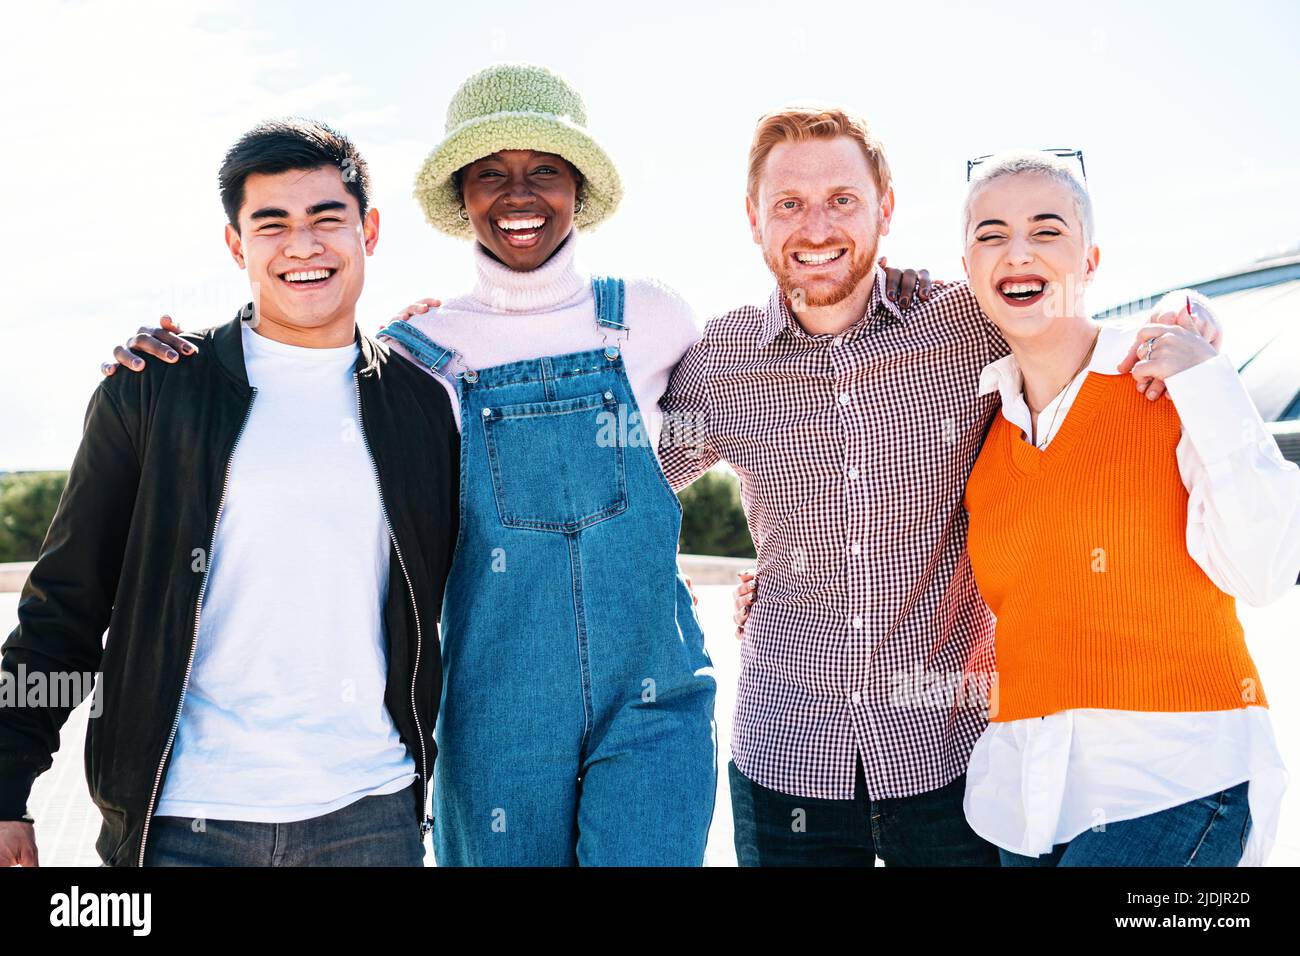 Ritratto di un felice gruppo multirazziale di amici sorridenti. I giovani ridono e si divertono nel parco in una giornata di sole Foto Stock